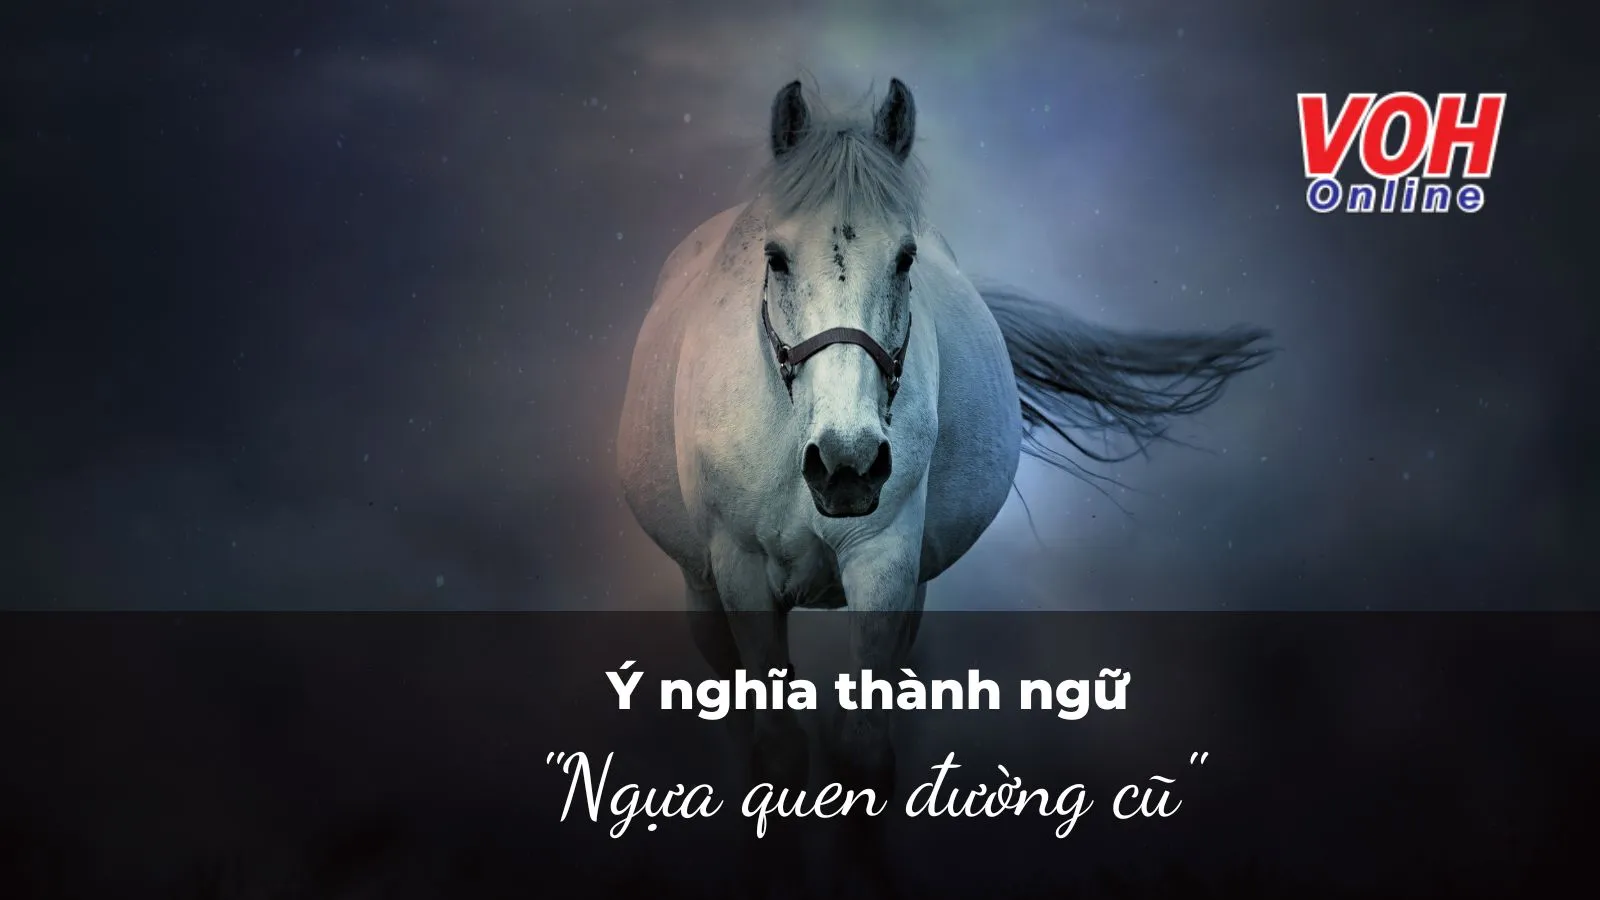 Giải thích ý nghĩa thành ngữ “Ngựa quen đường cũ” nói đến điều gì?